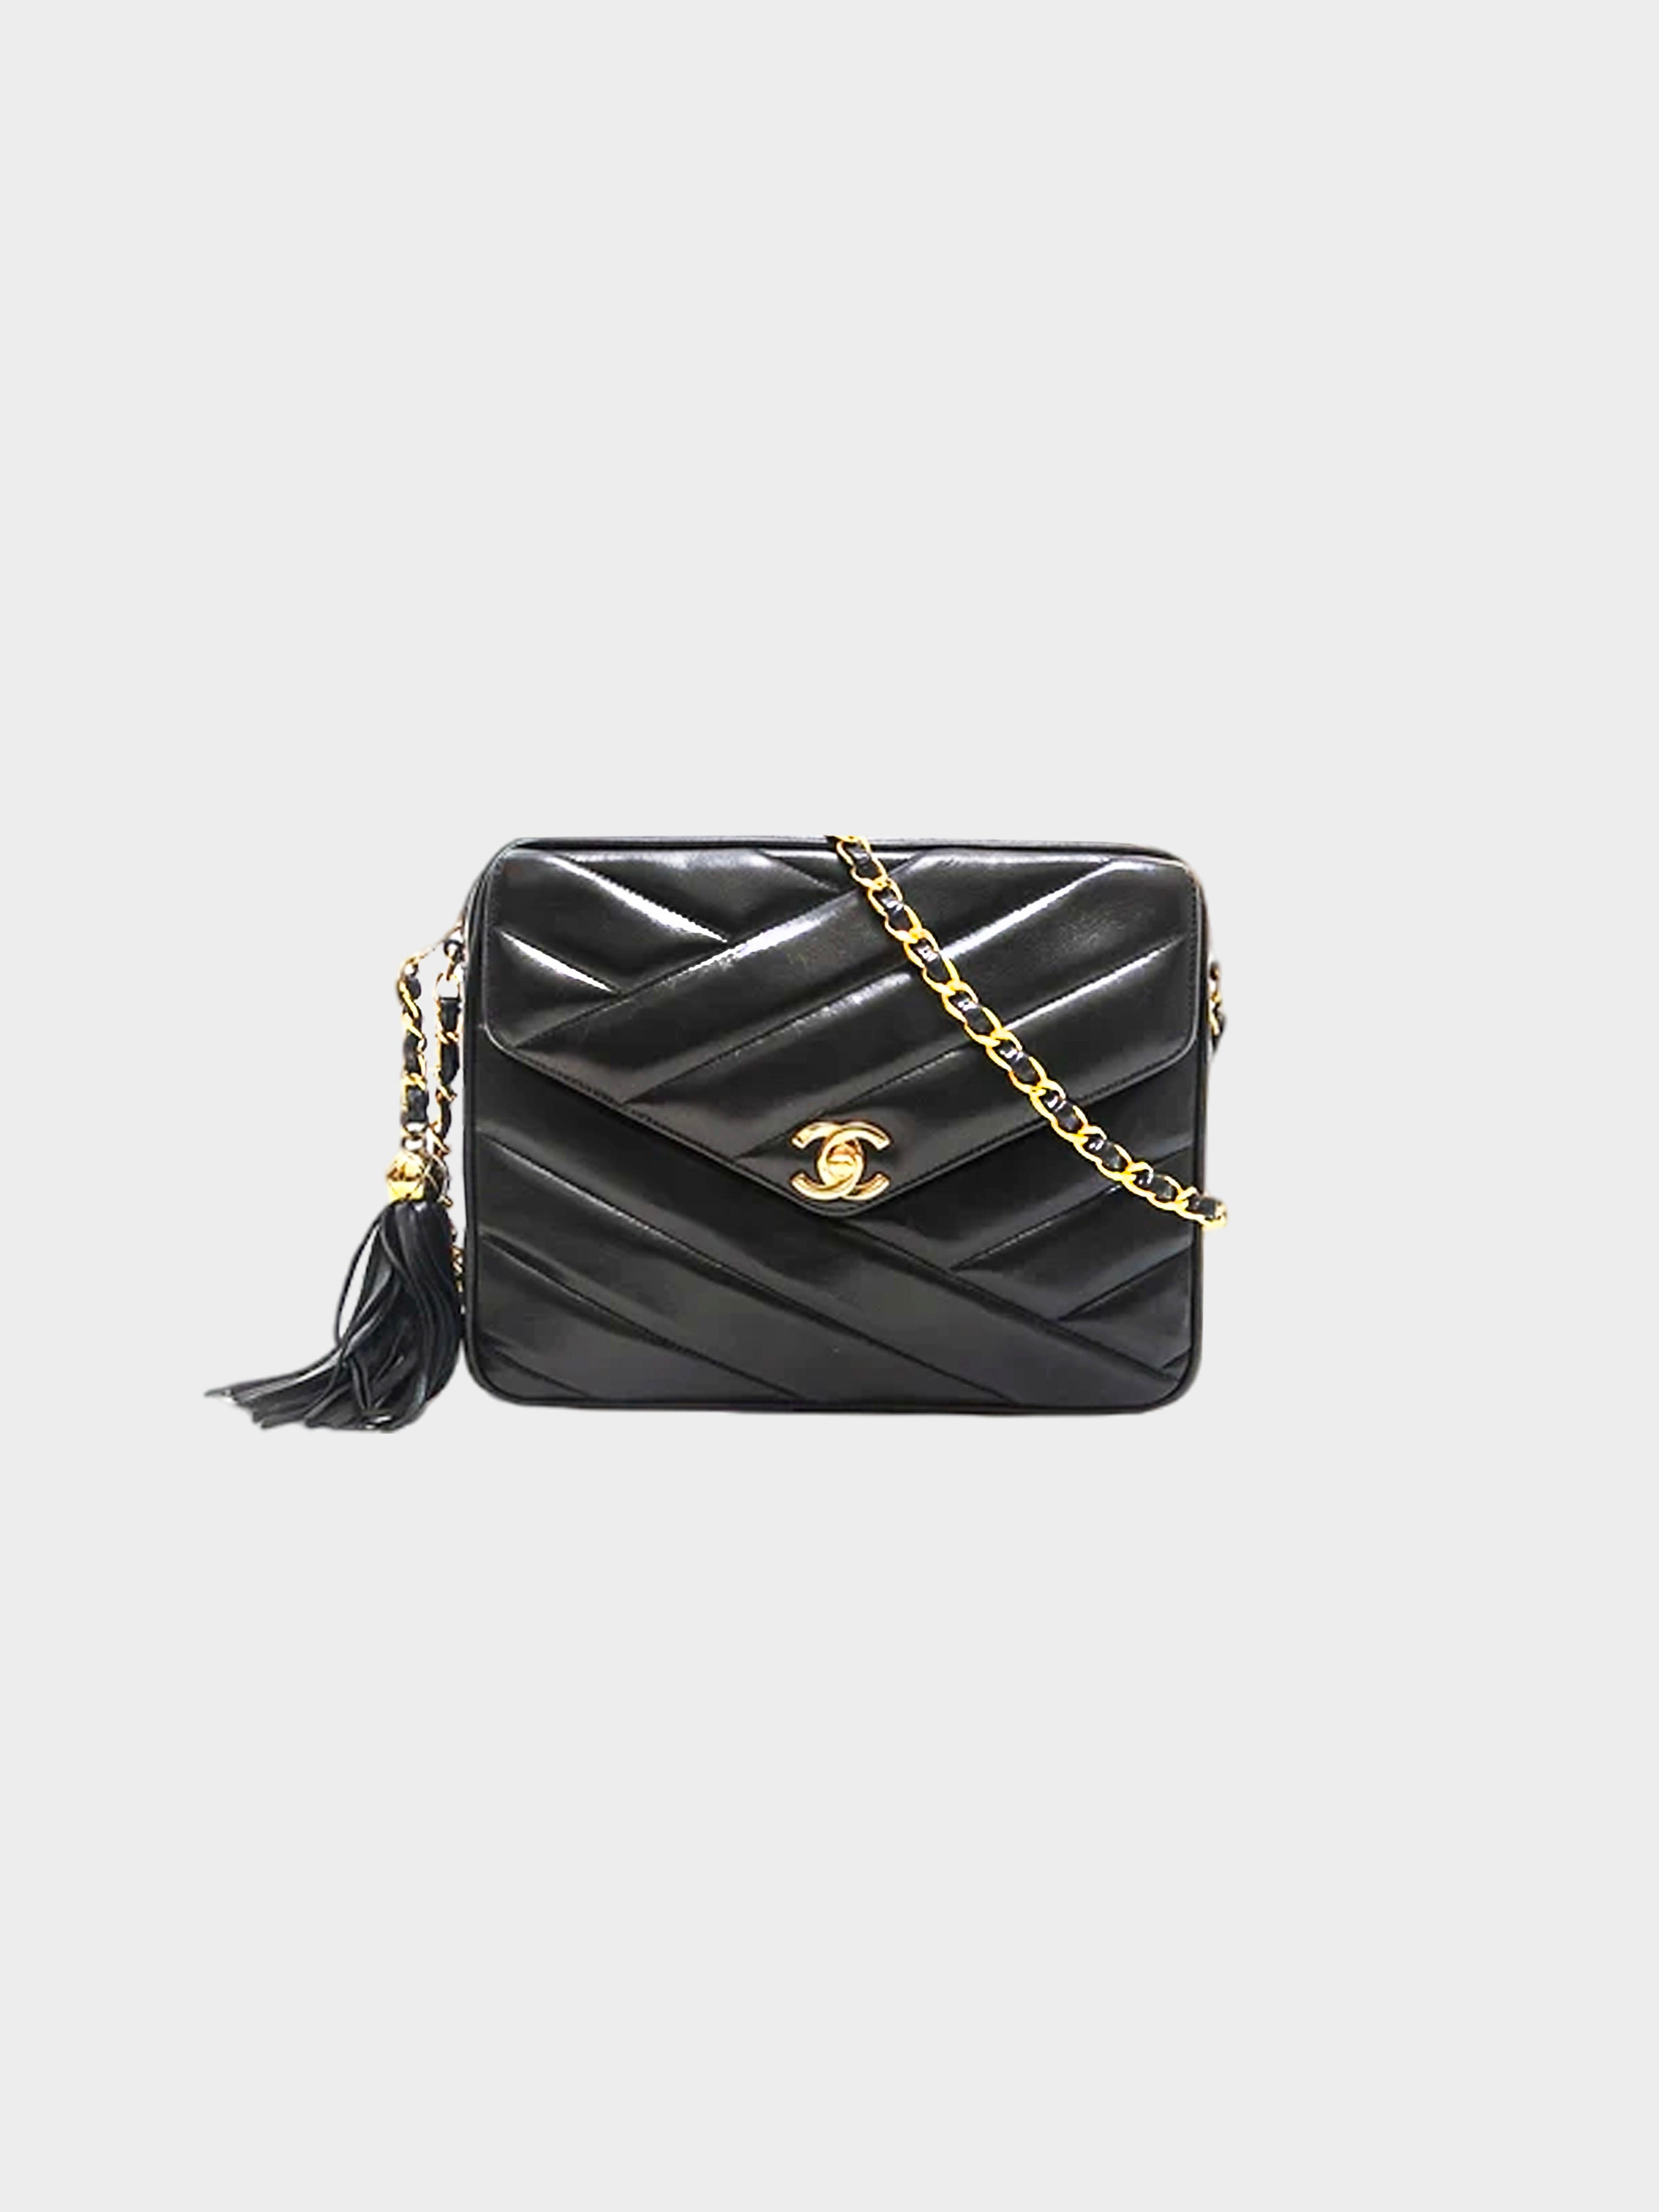 Chanel 1991 Matelasse Beige Shoulder Bag · INTO